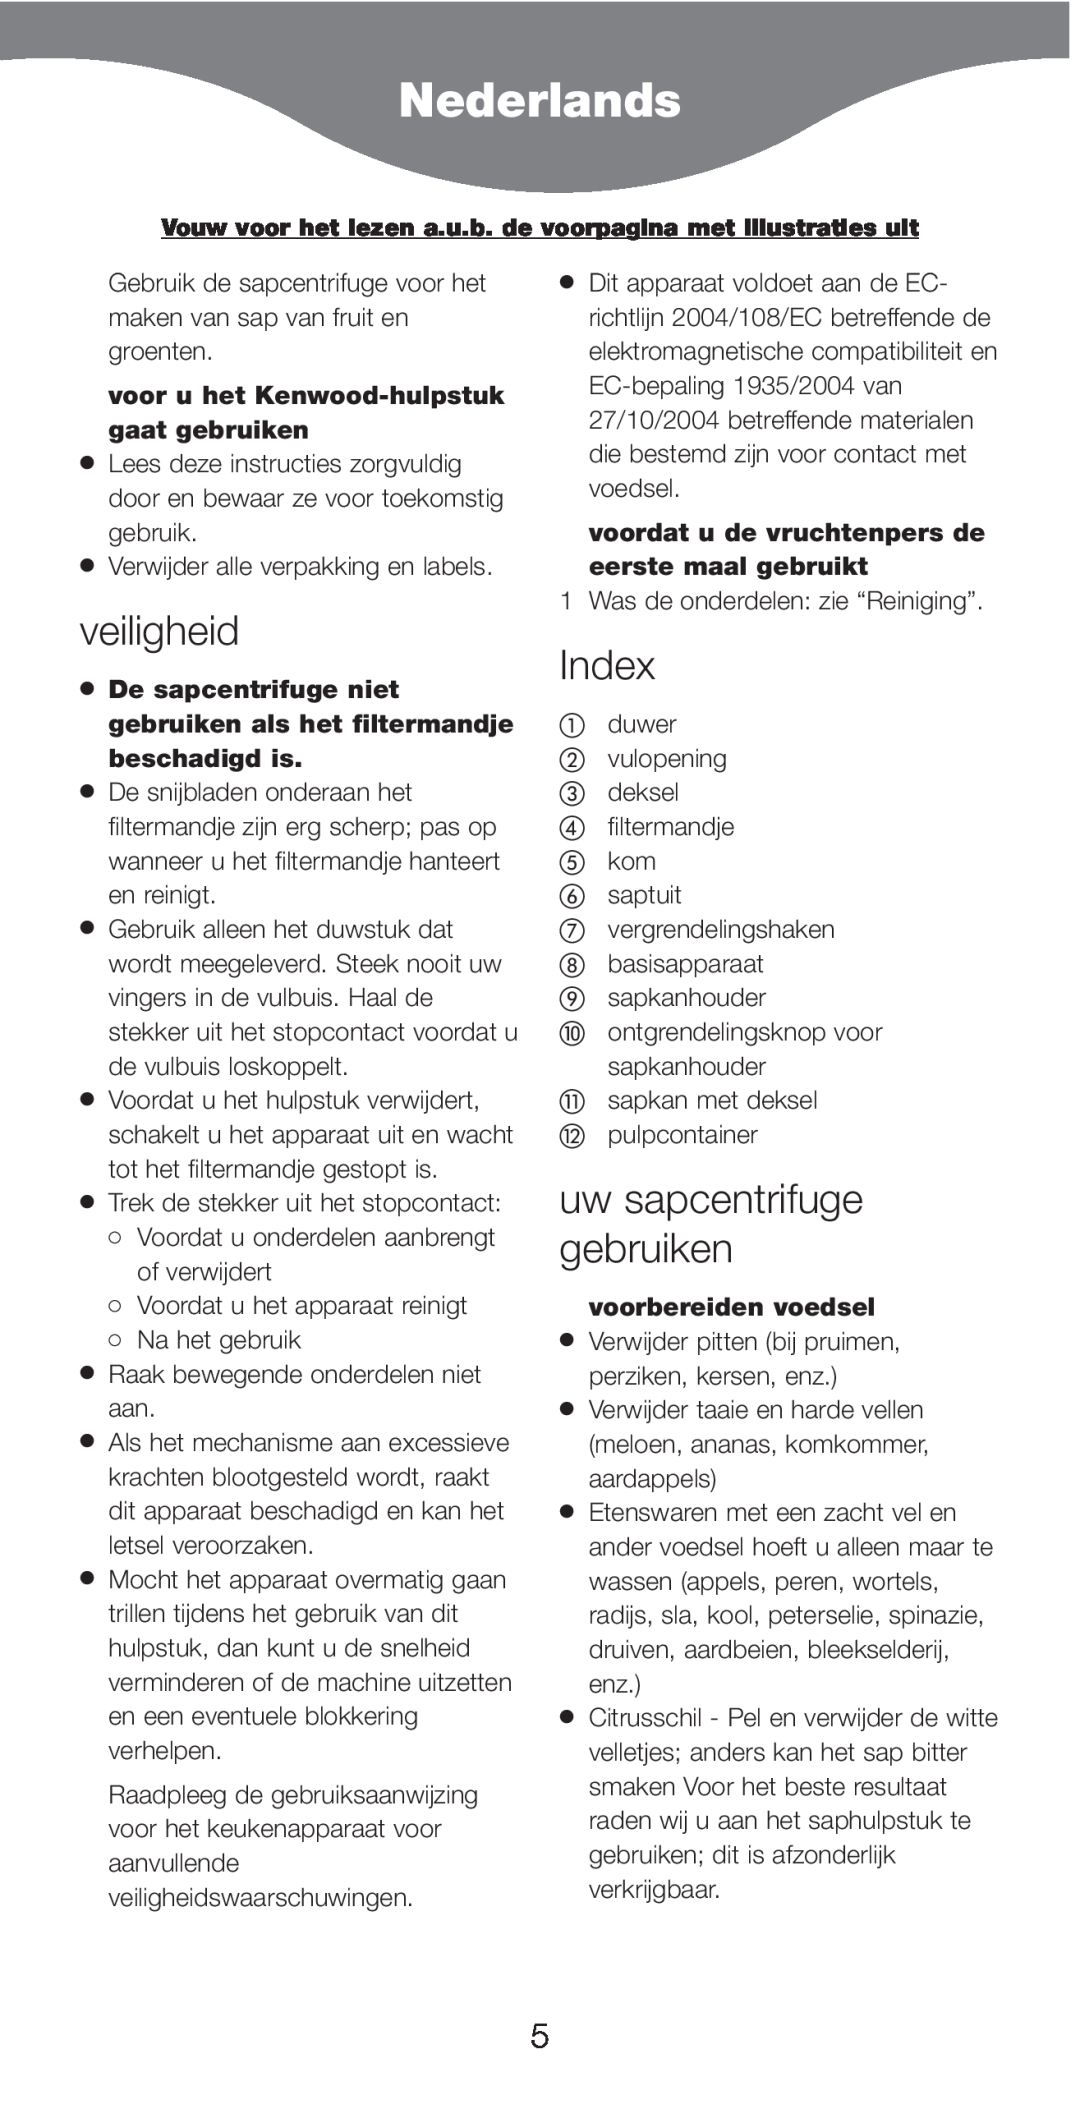 Kenwood AT641 manual Nederlands, veiligheid, Index, uw sapcentrifuge gebruiken, voor u het Kenwood-hulpstukgaat gebruiken 